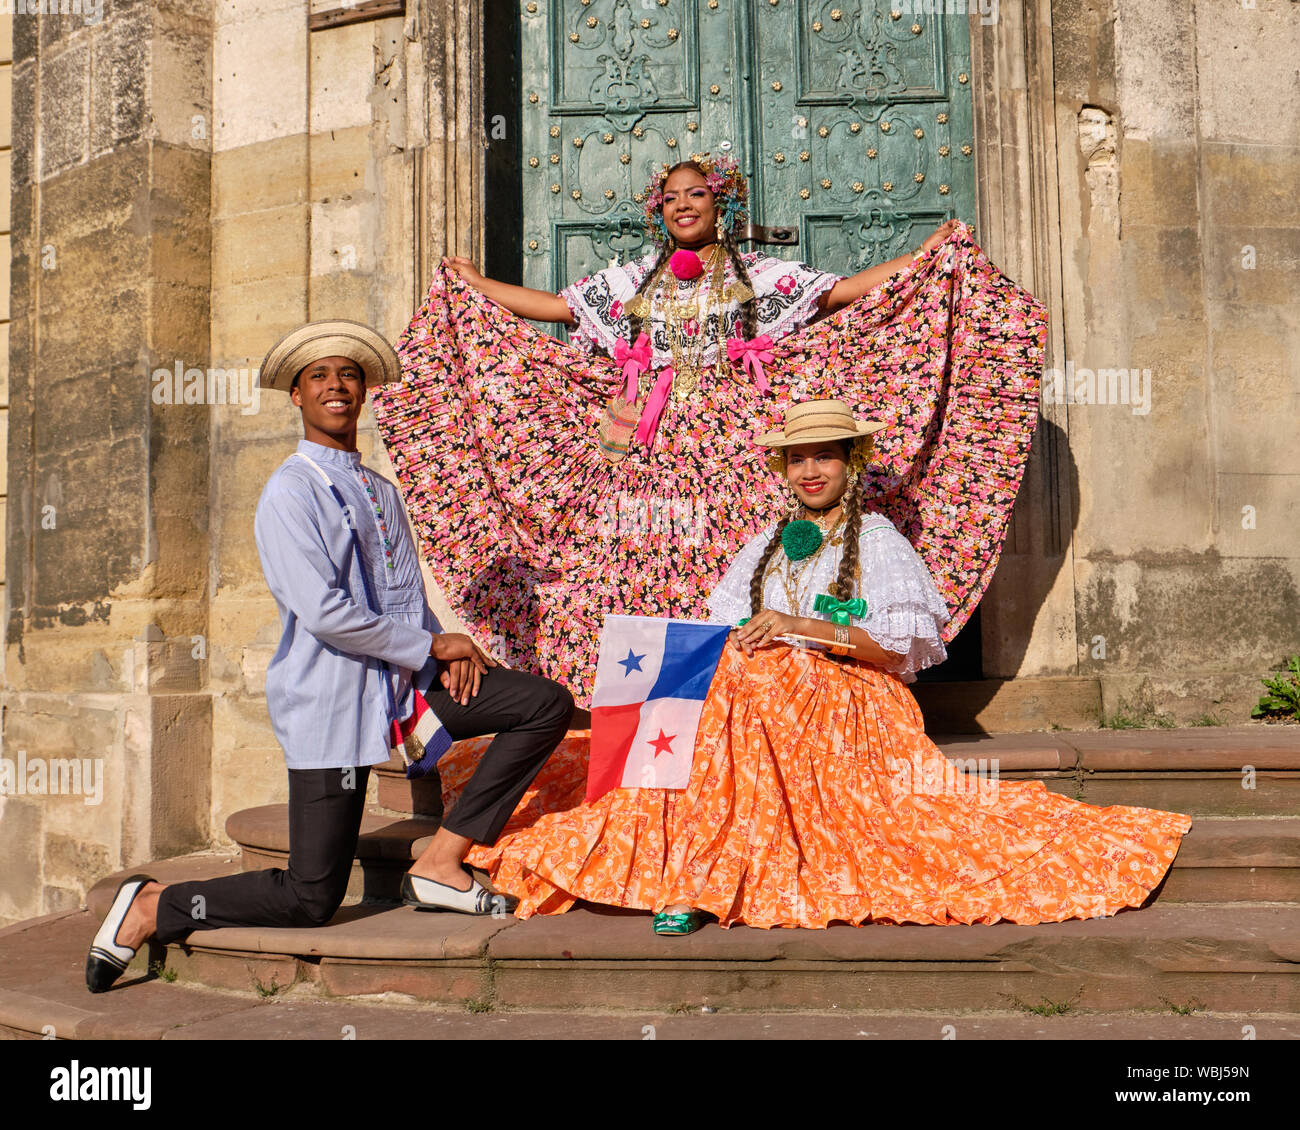 Mitglied von Panama Folklore Gruppe in lokalen Kostüm während Fashion Show von Etnovyr Festival in der Straße von Lviv, Ukraine - 24. August 2019 Stockfoto